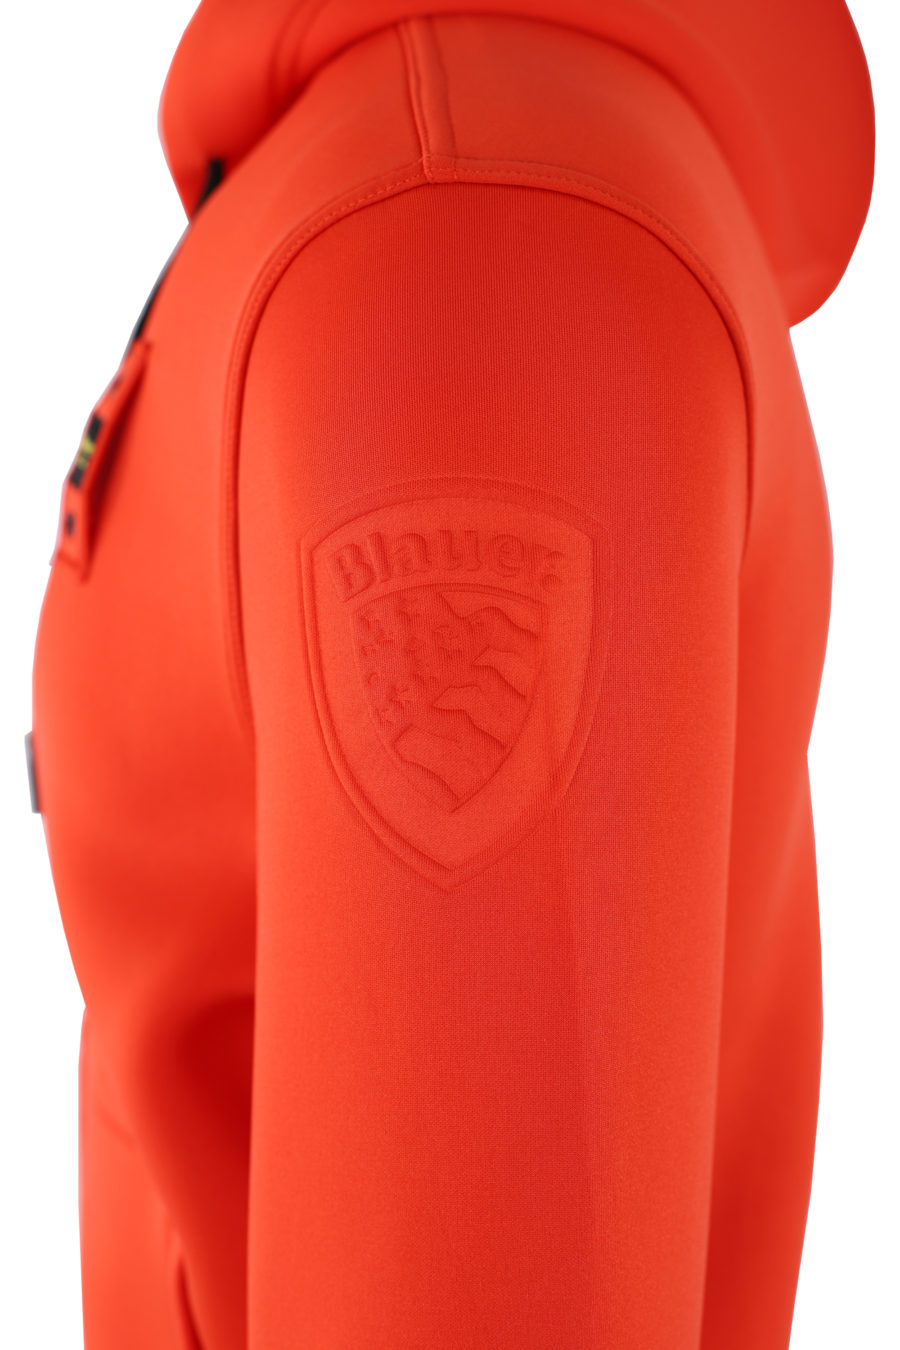 Camisola de neoprene laranja com capuz e fecho de correr - IMG 0514